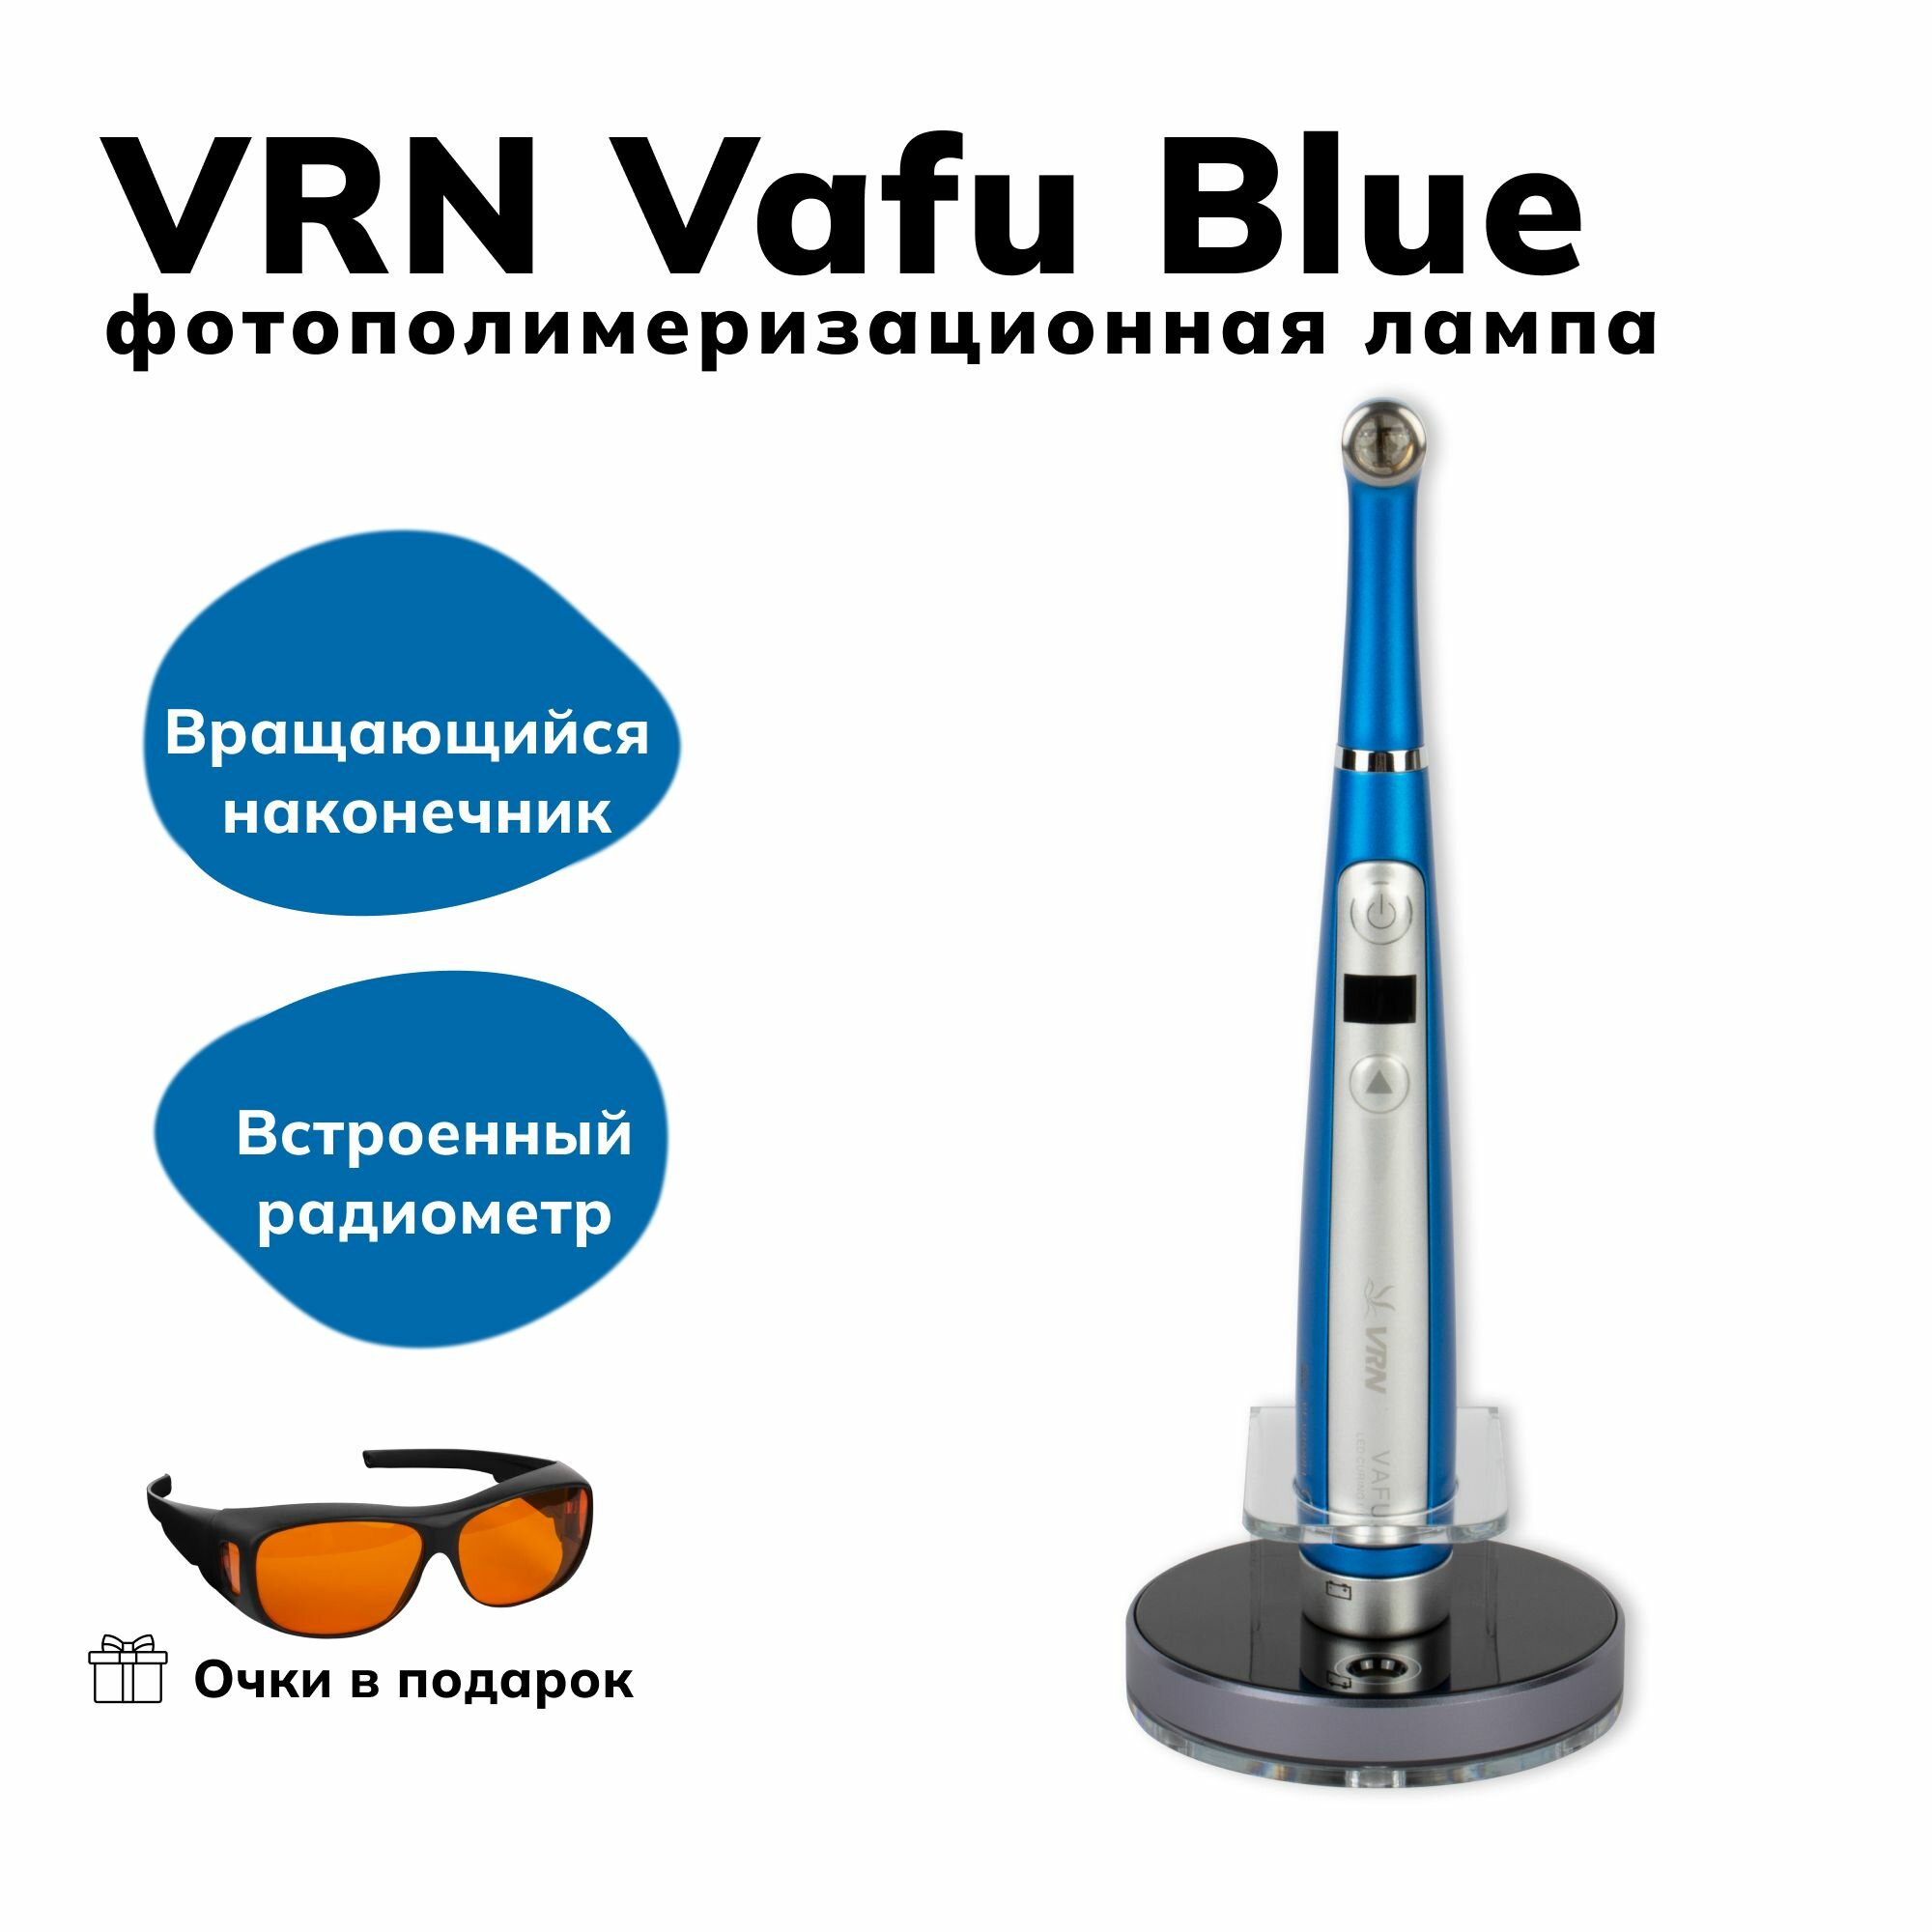 VRN Vafu Blue - беспроводная фотополимеризационная лампа повышенной мощности, с кариес-детектором, Guilin Veirun Medical Technology